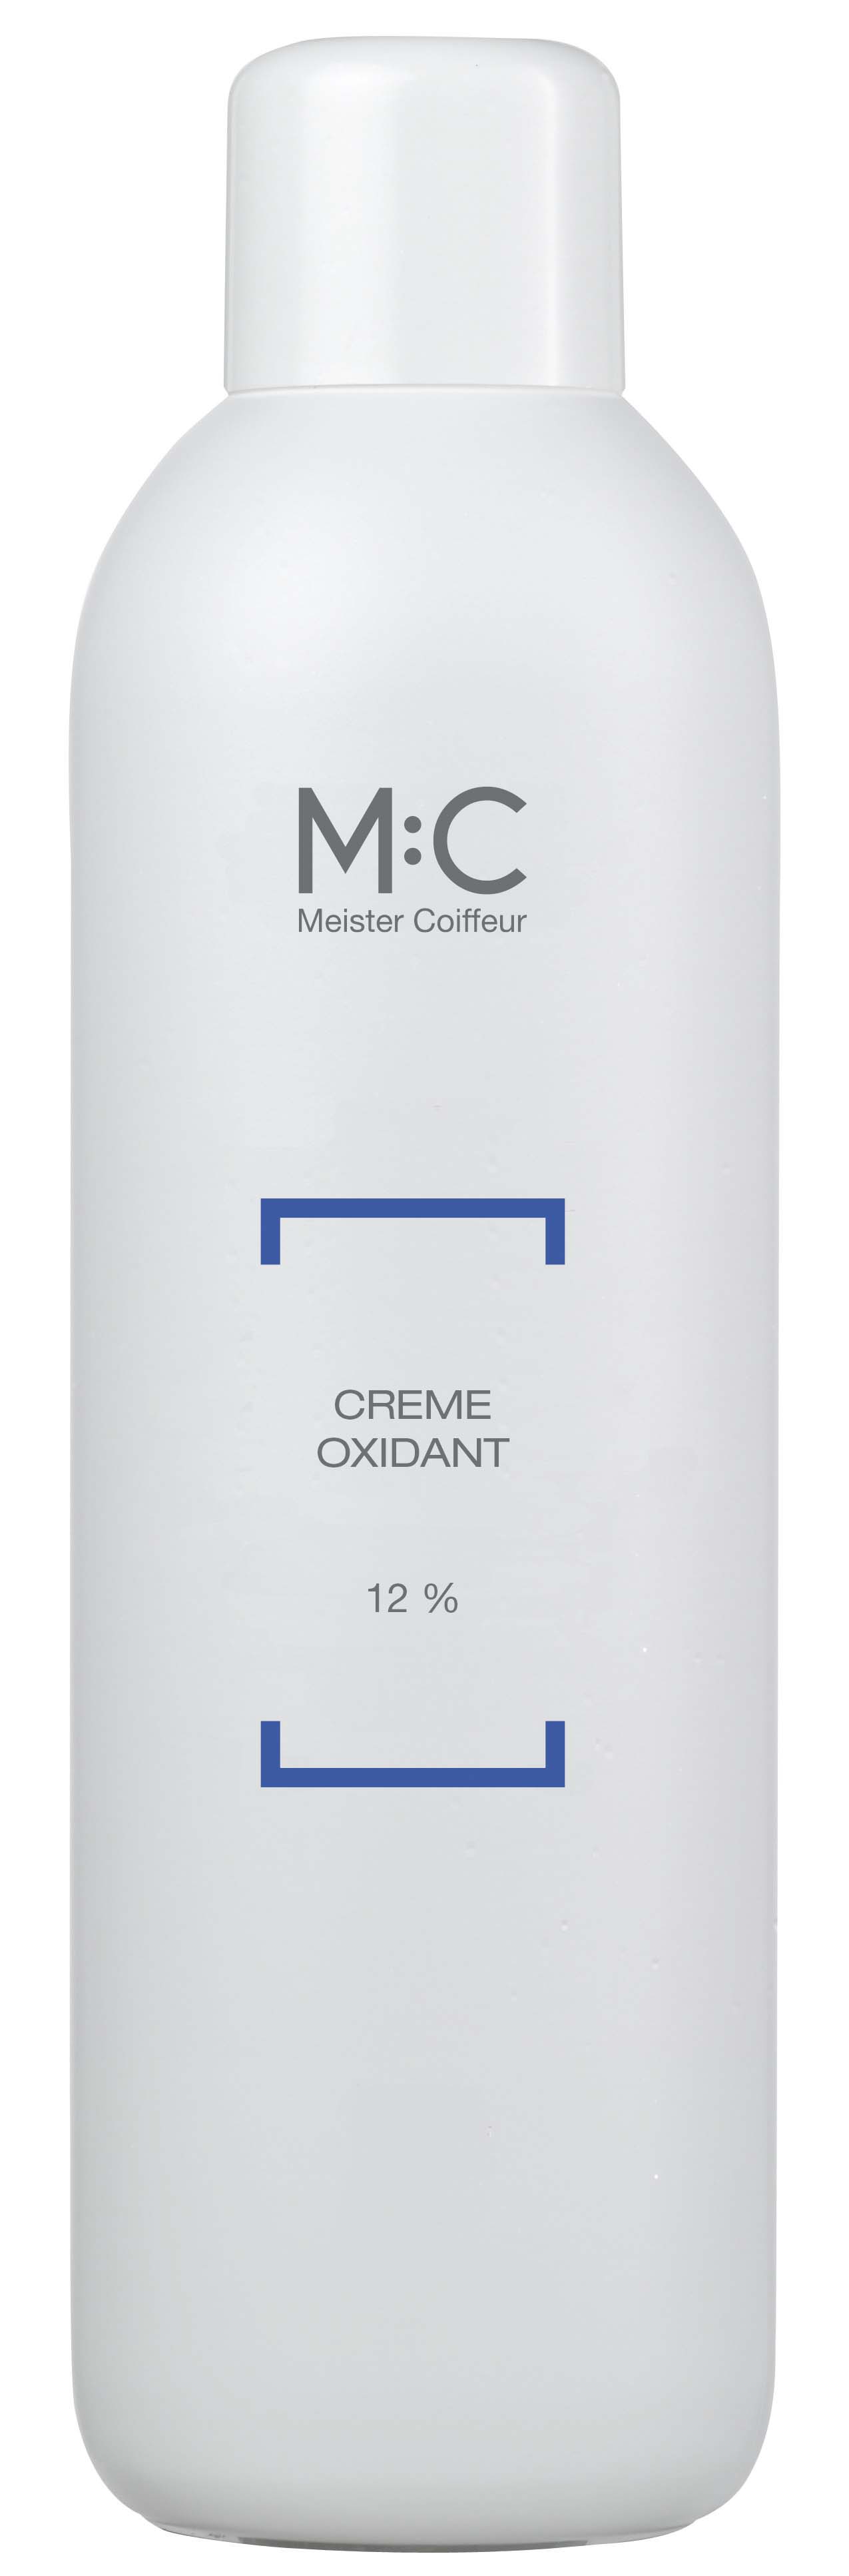 M:C Cream Oxide 12,0% C 1.000 ml